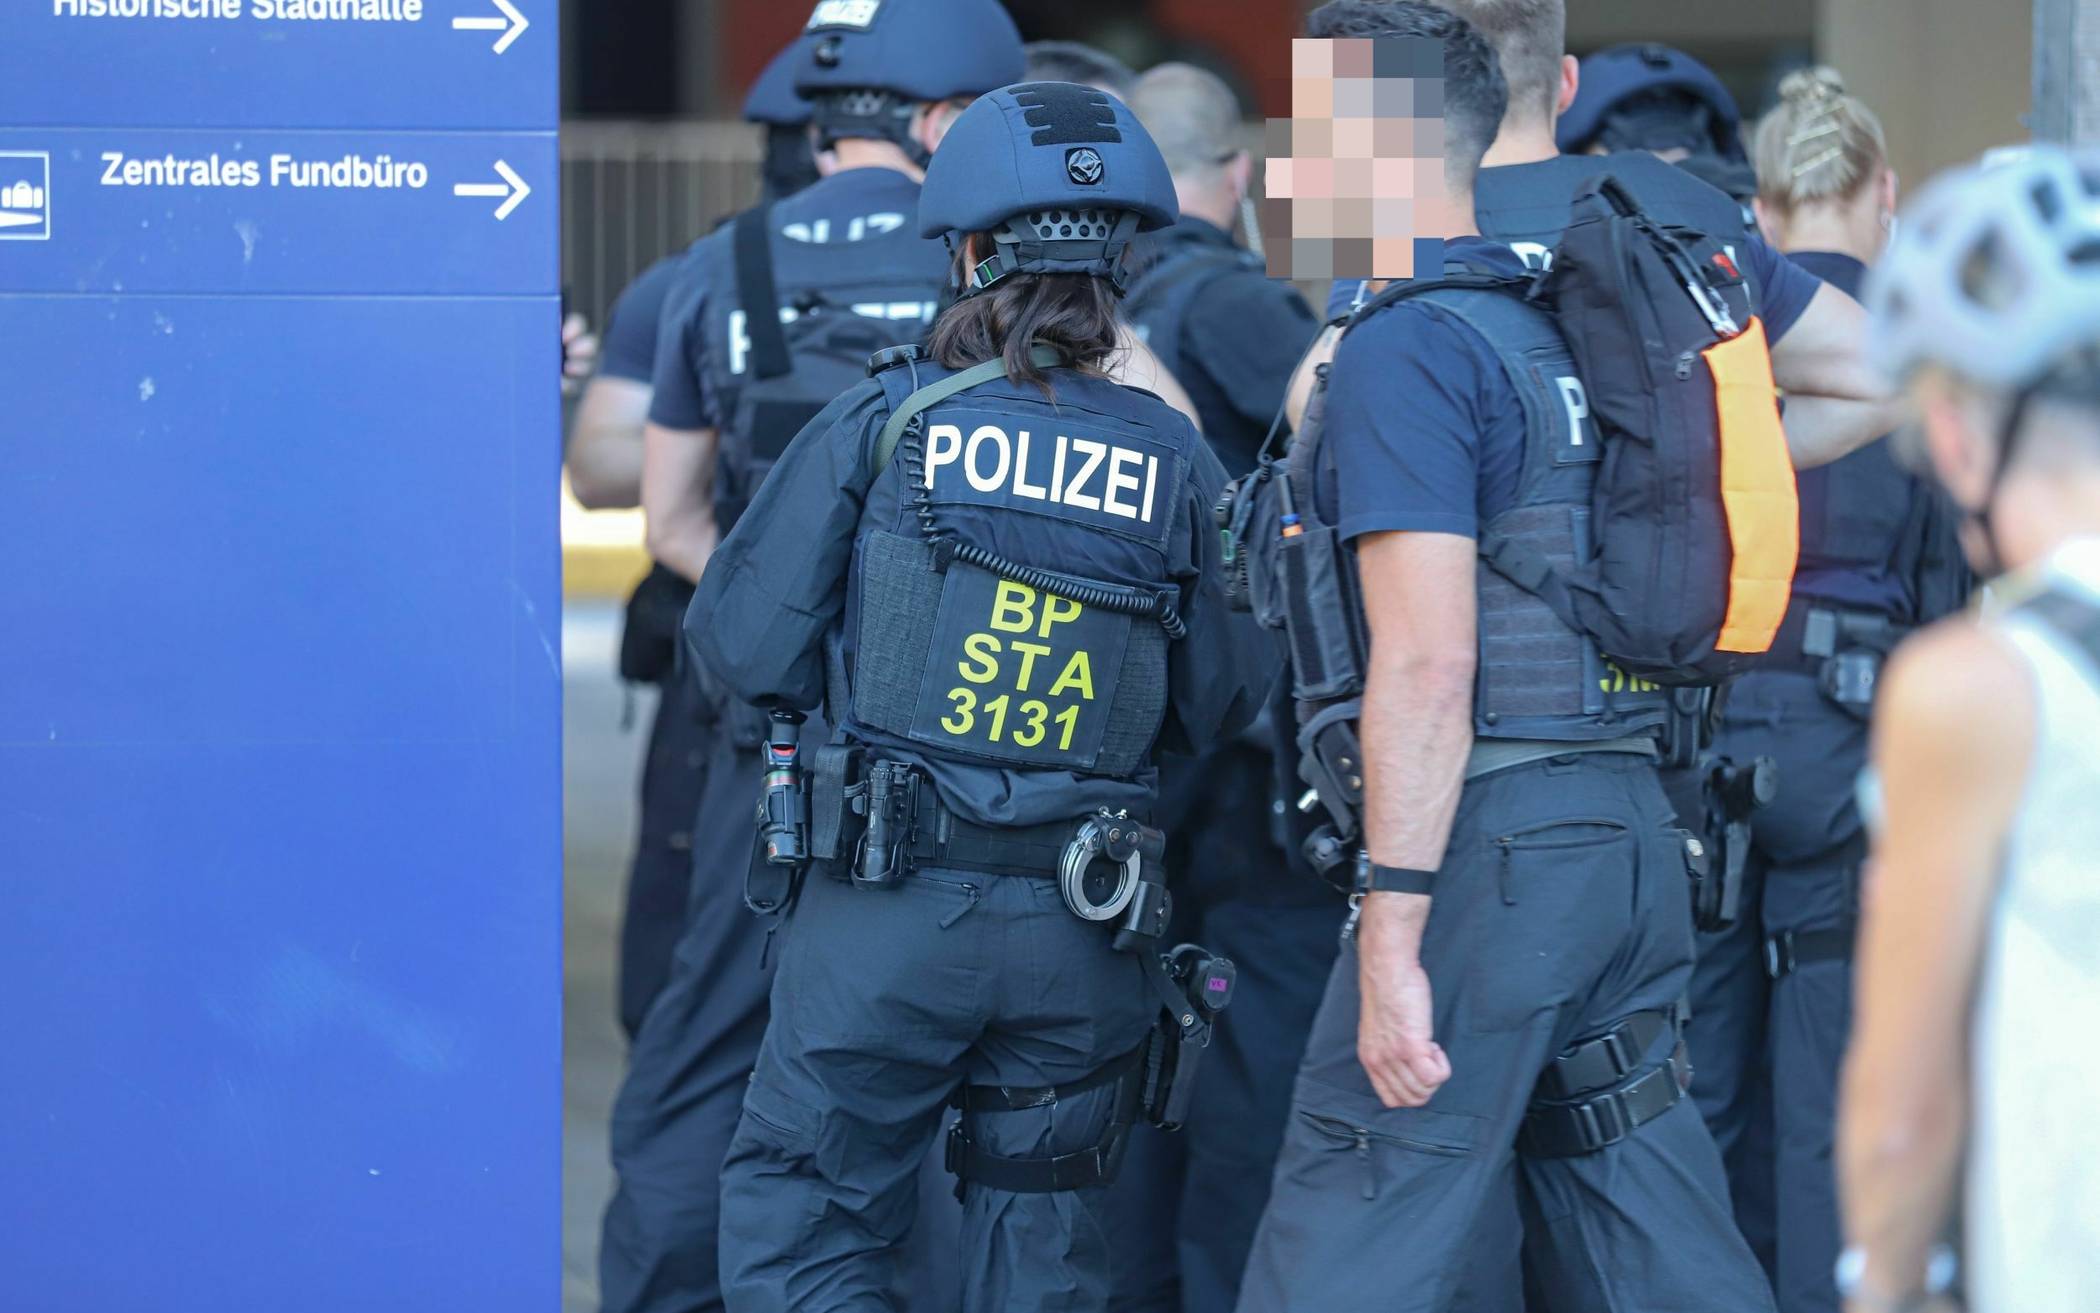 Polizei überwältigt Mann am Hauptbahnhof